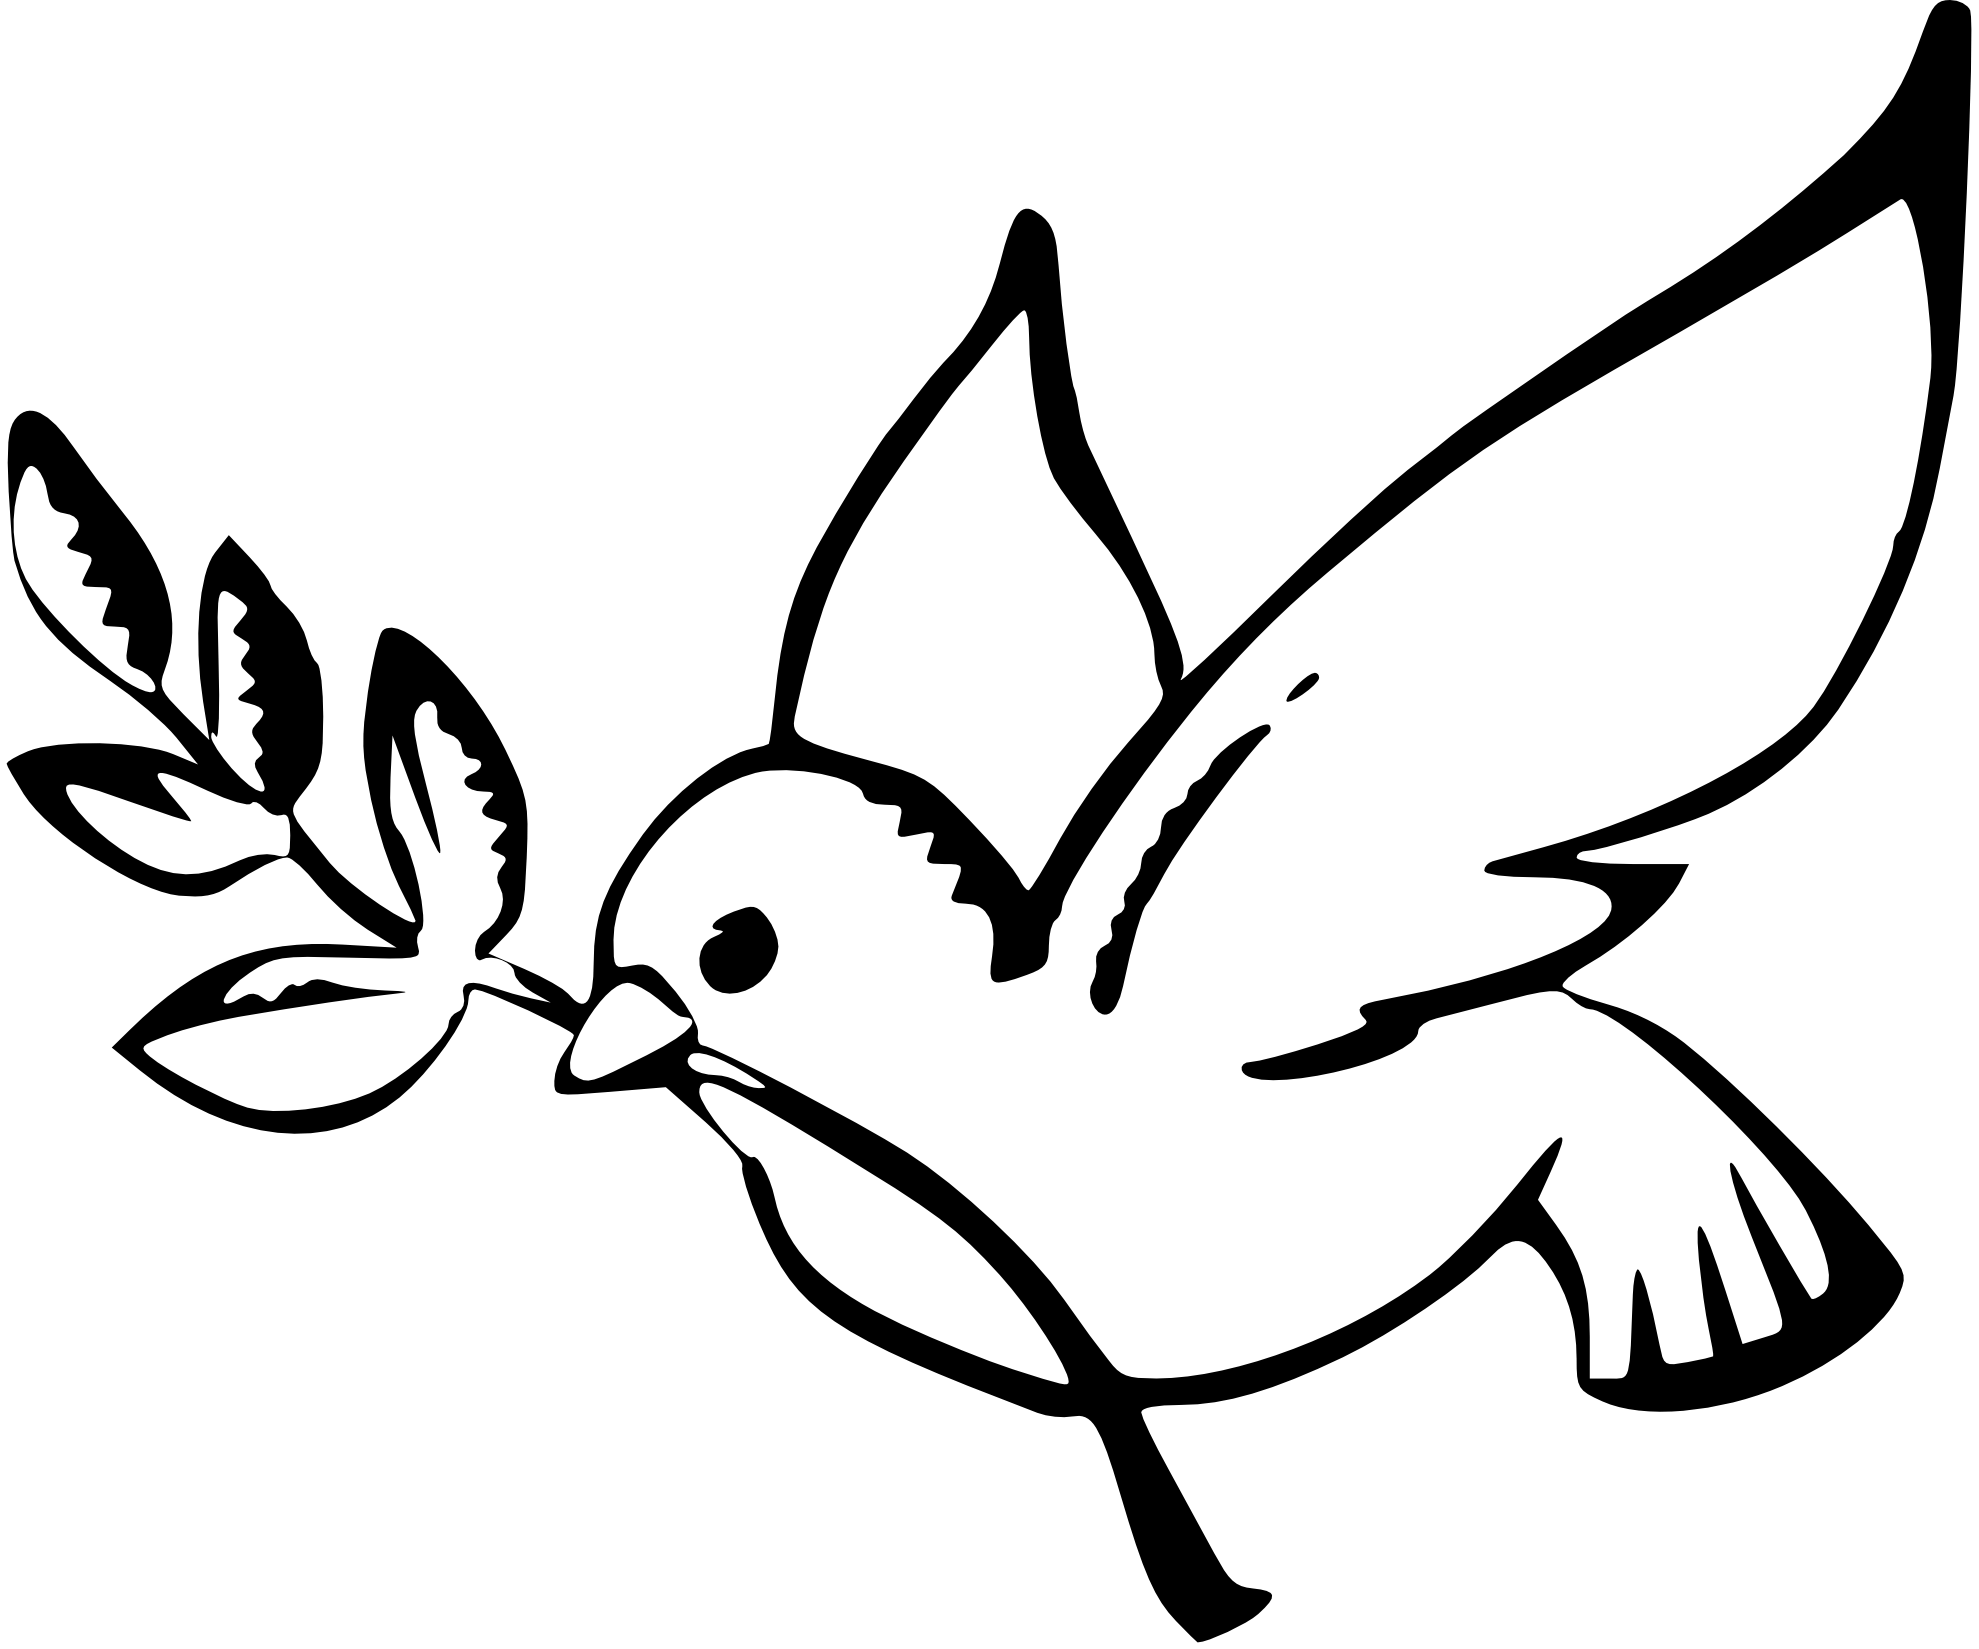 Dove symbol peace.